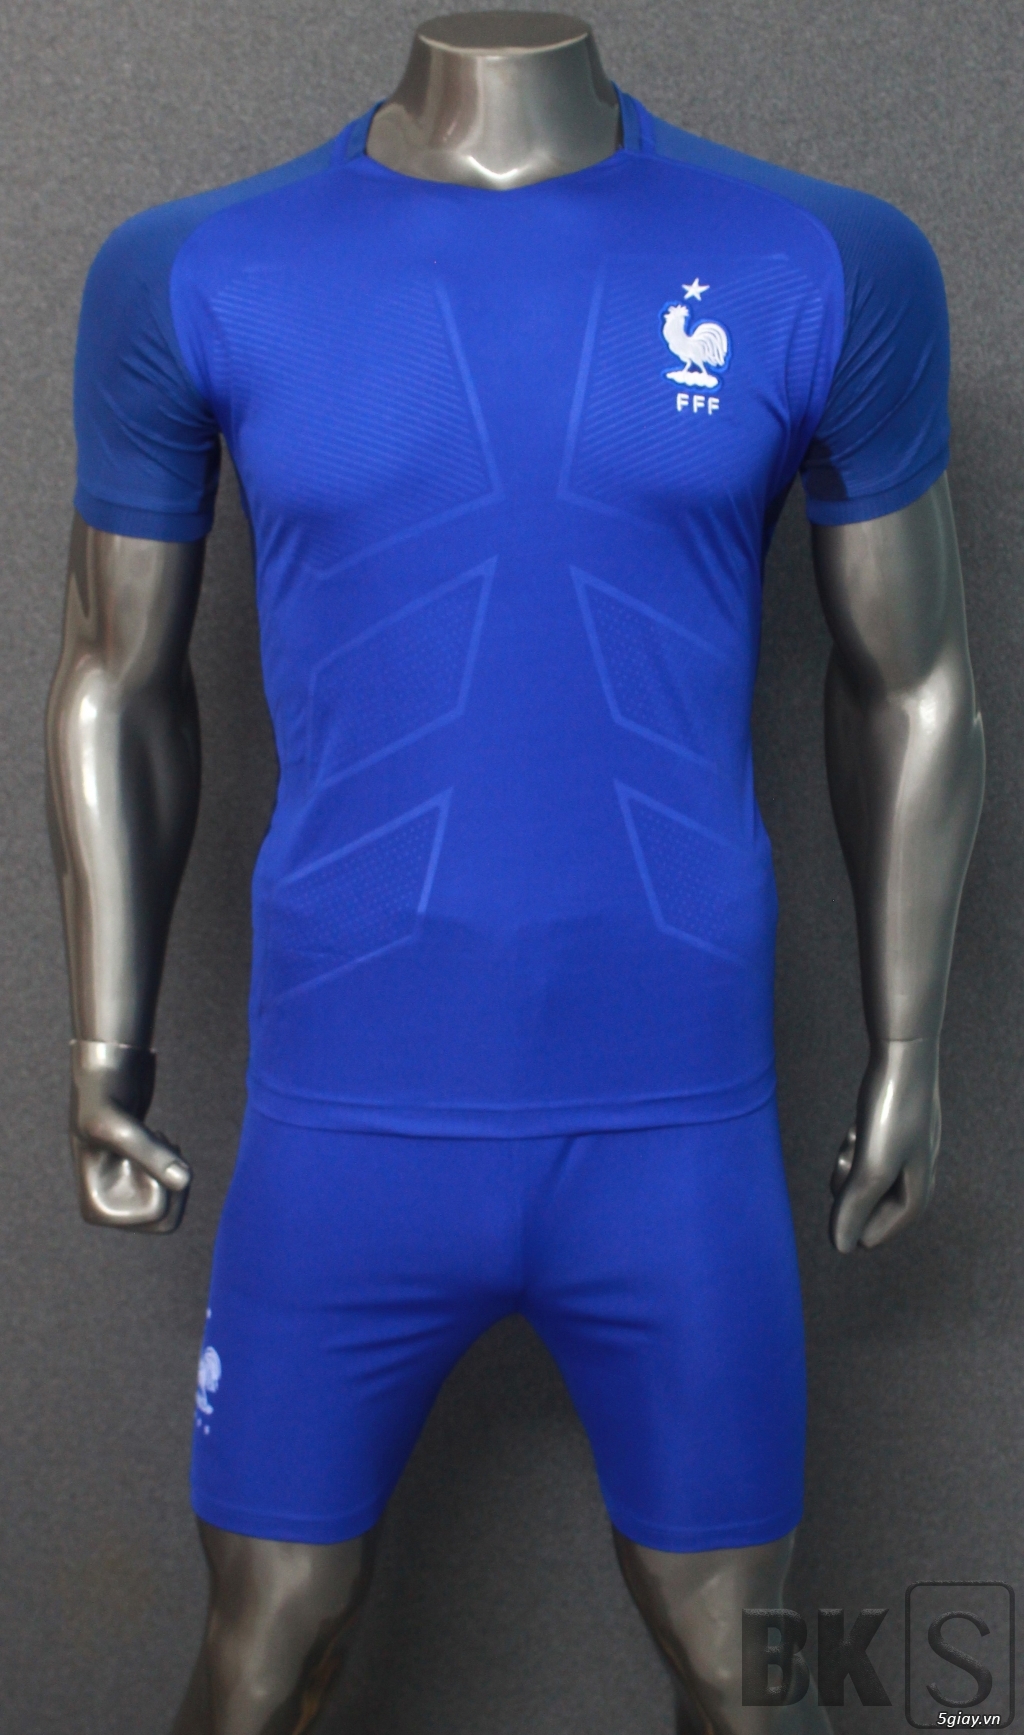 Áo bóng đá HP-địa chỉ gốc sản xuất trang phục thể thao số 1 Việt Nam - 19